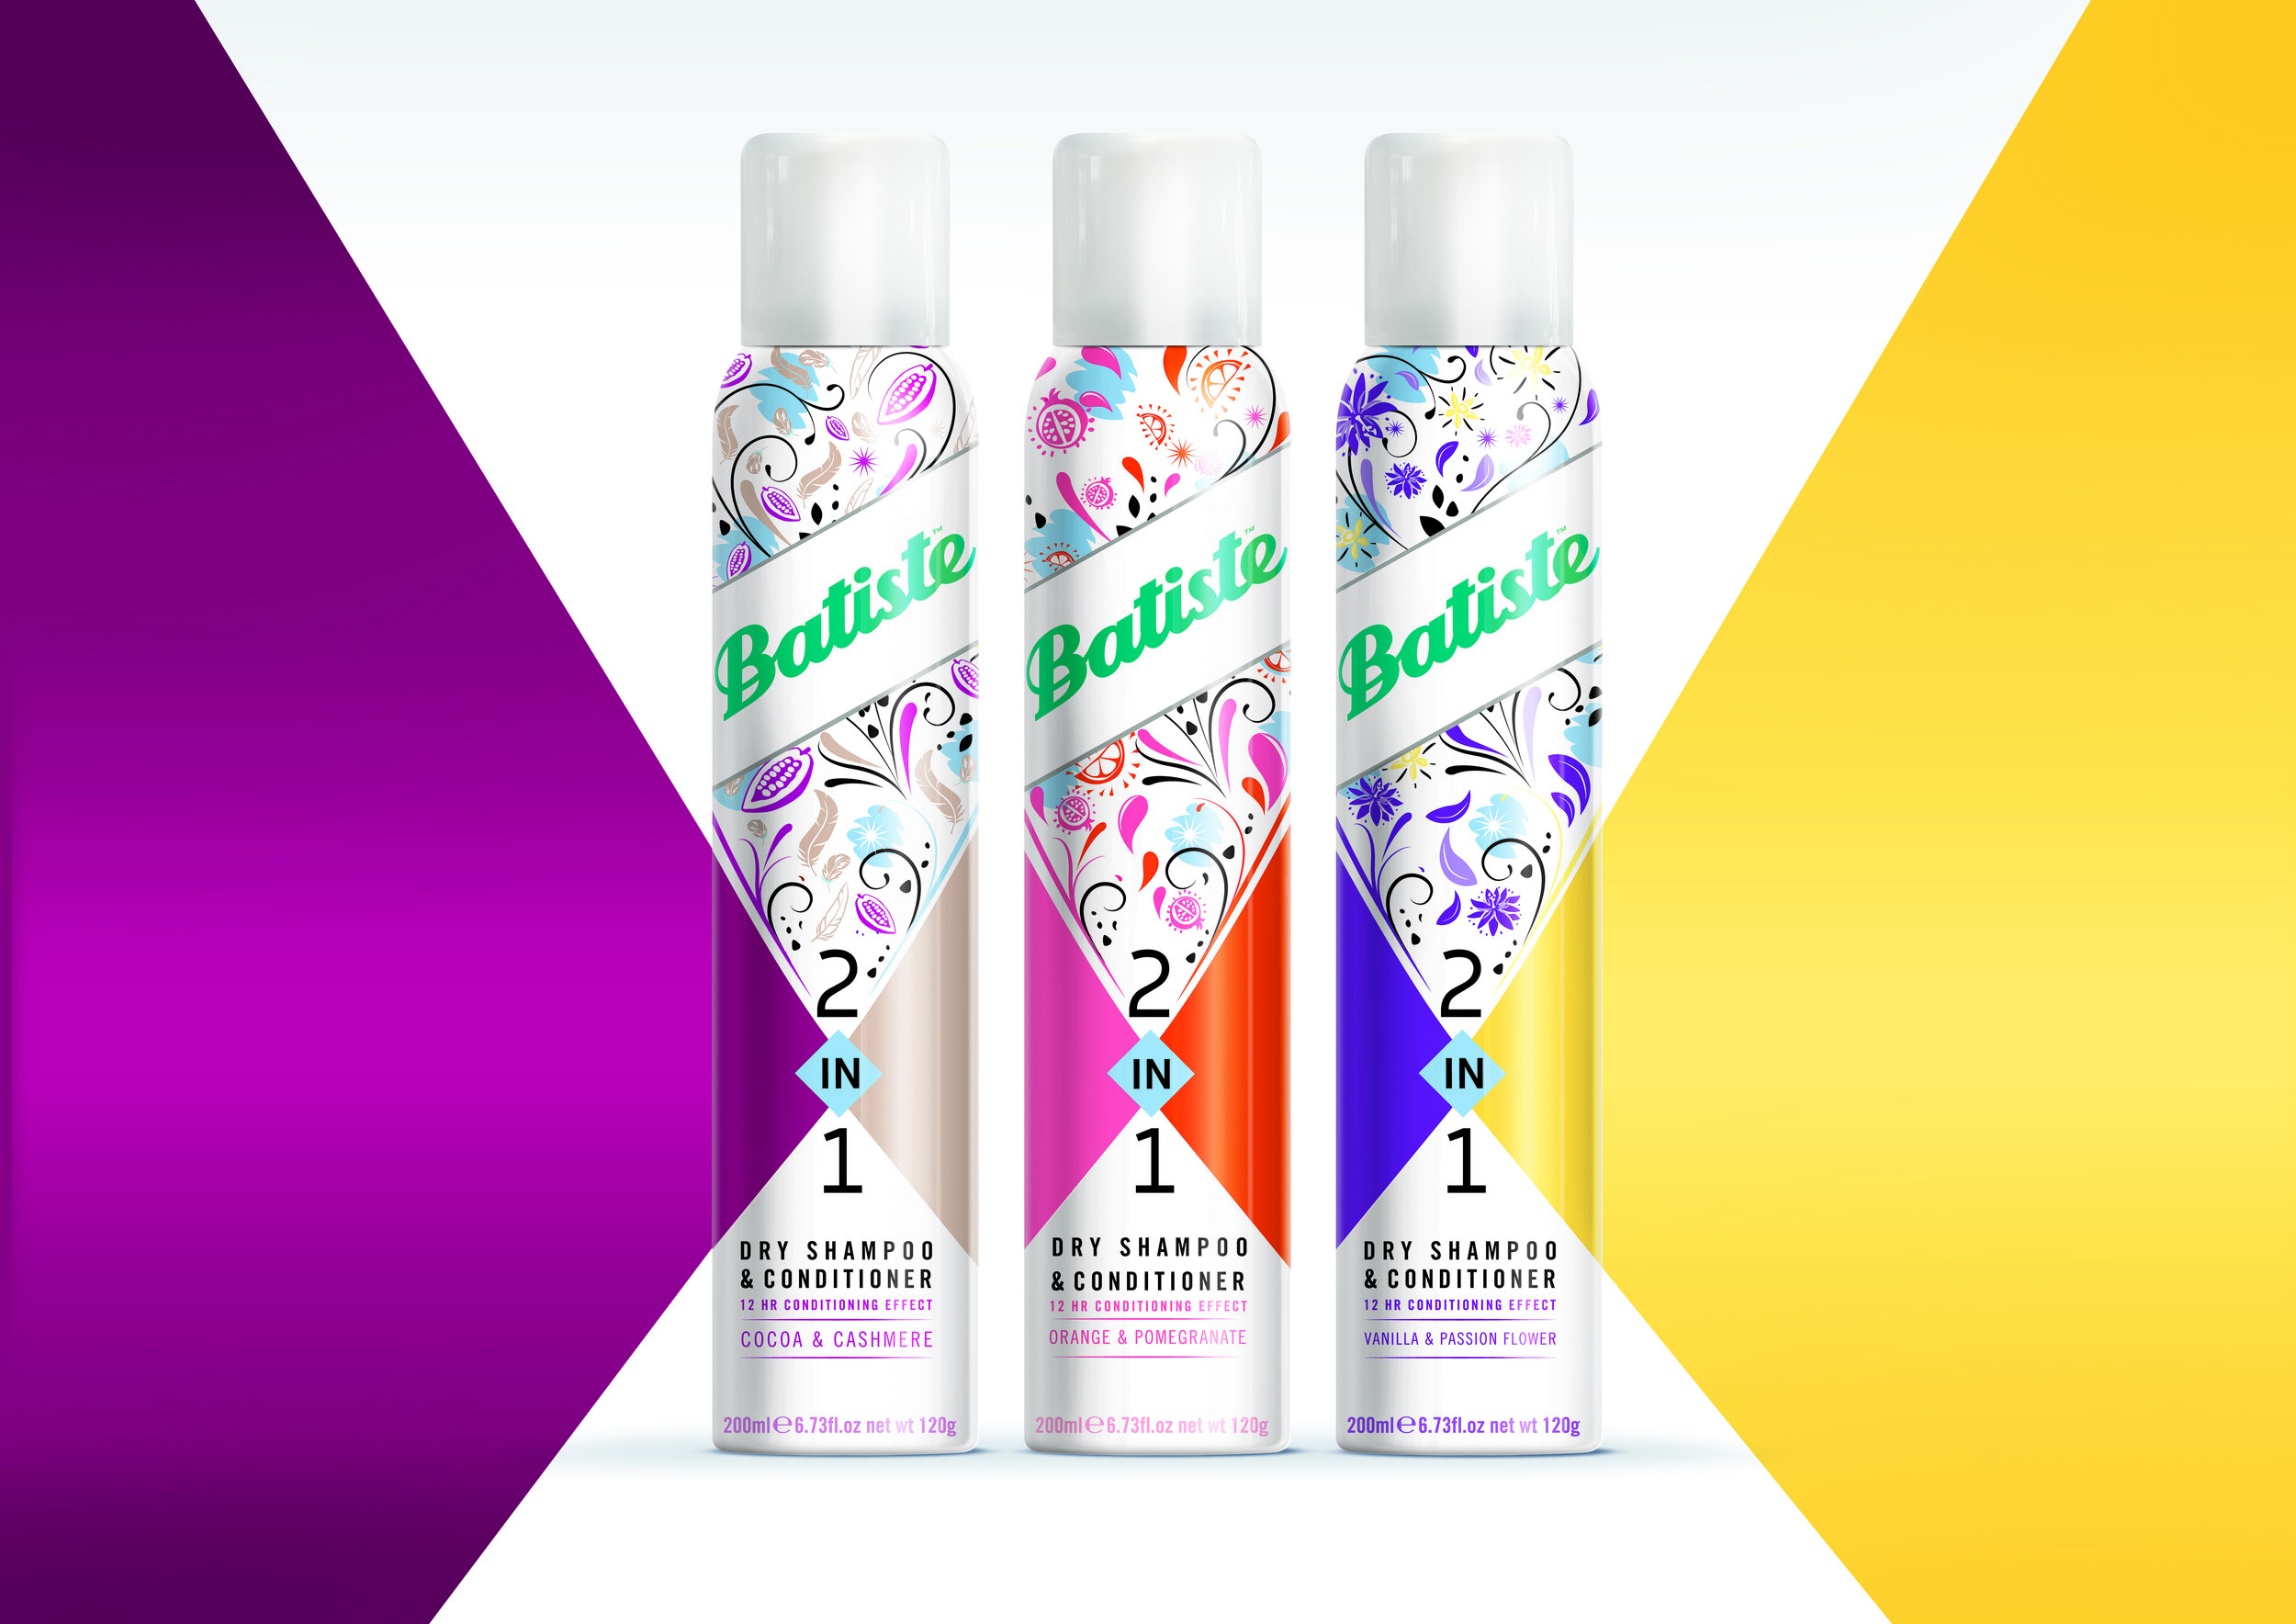 bluemarlin Brand Design Agency – Batiste 2-in-1 Packaging Design